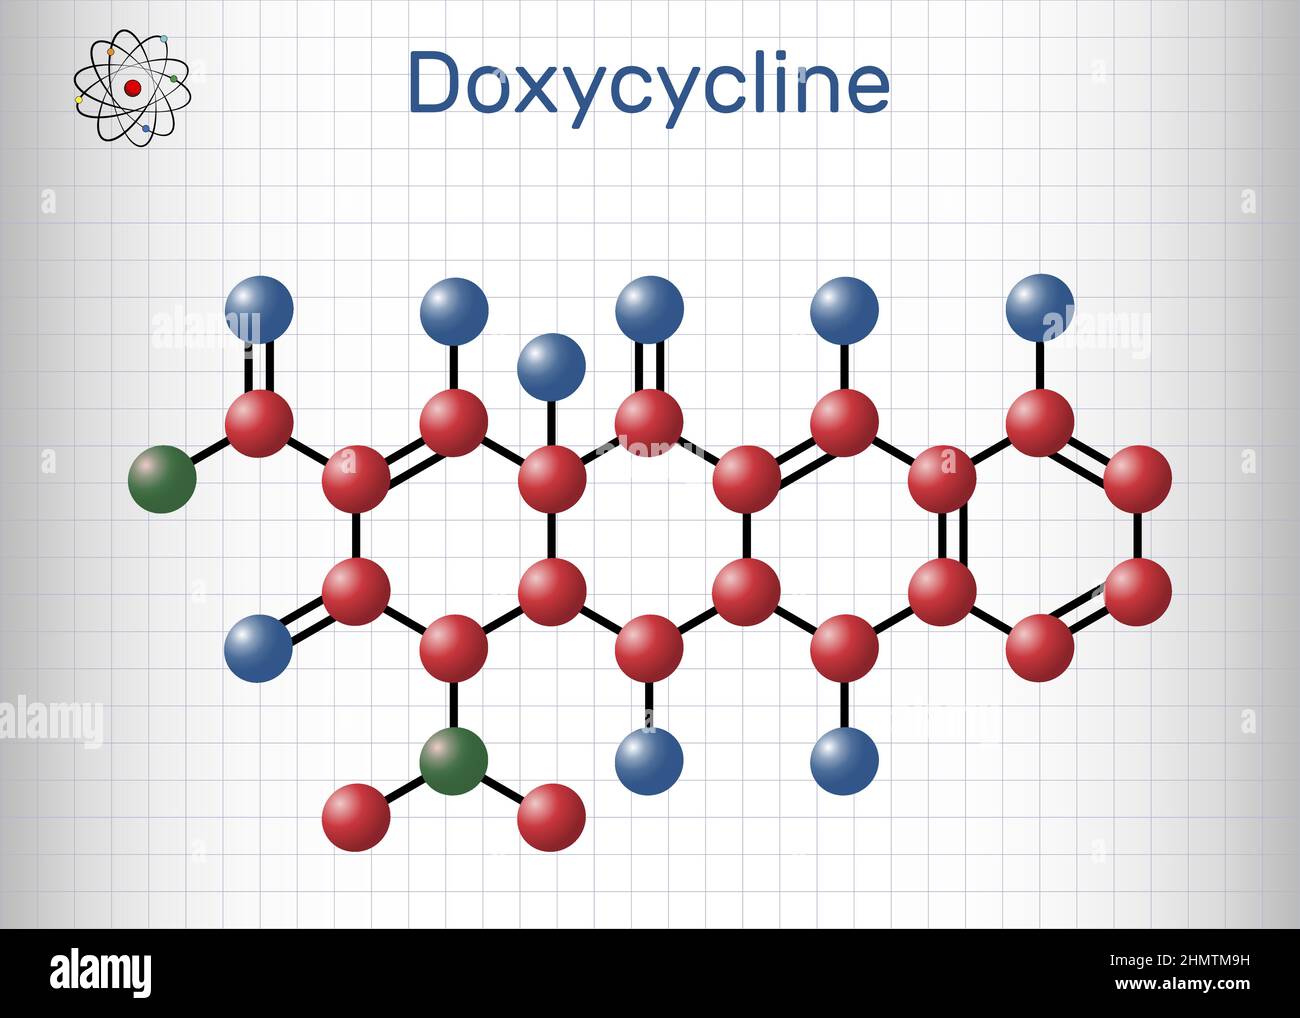 Doxycyclin-Molekül. Es handelt sich um ein Breitband-Tetracyclin-Antibiotikum, das zur Behandlung einer Vielzahl von bakteriellen Infektionen eingesetzt wird. Molekülmodell. pape Stock Vektor